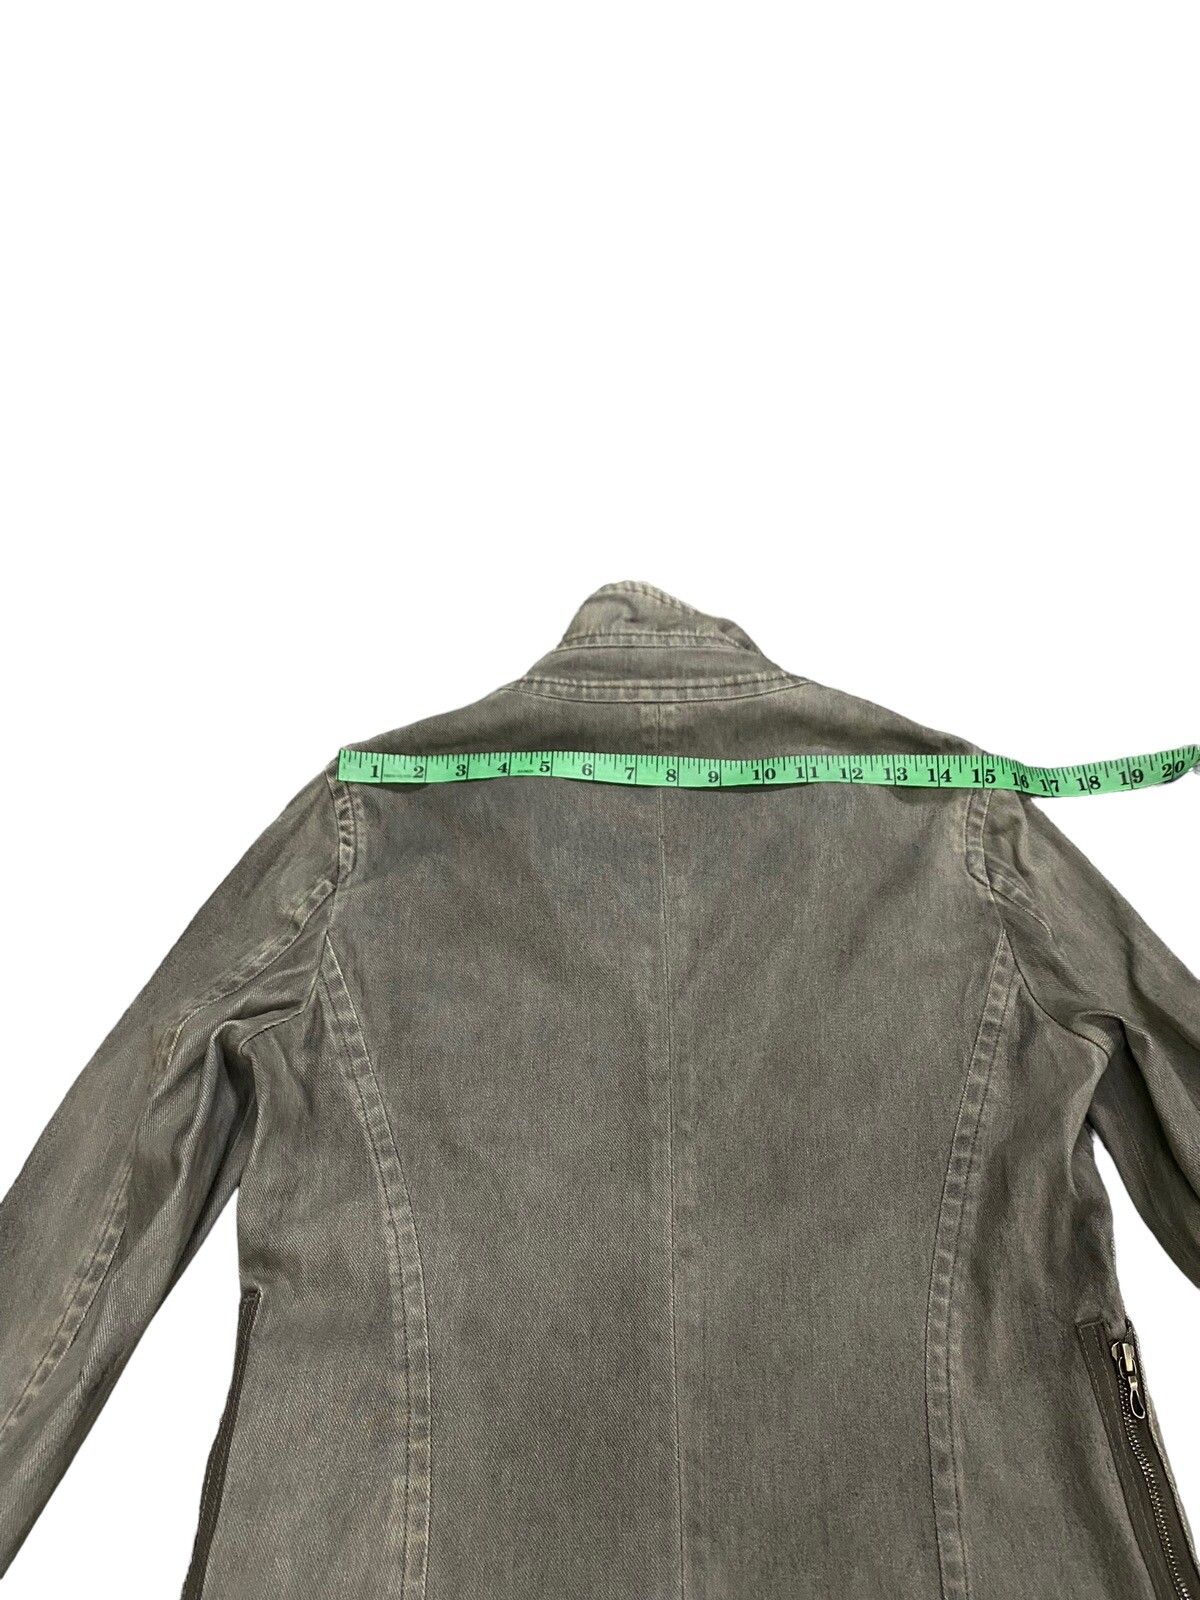 Julius Ss11 Knit Denim Jacket Size 1 (s) Grey Colour - 22